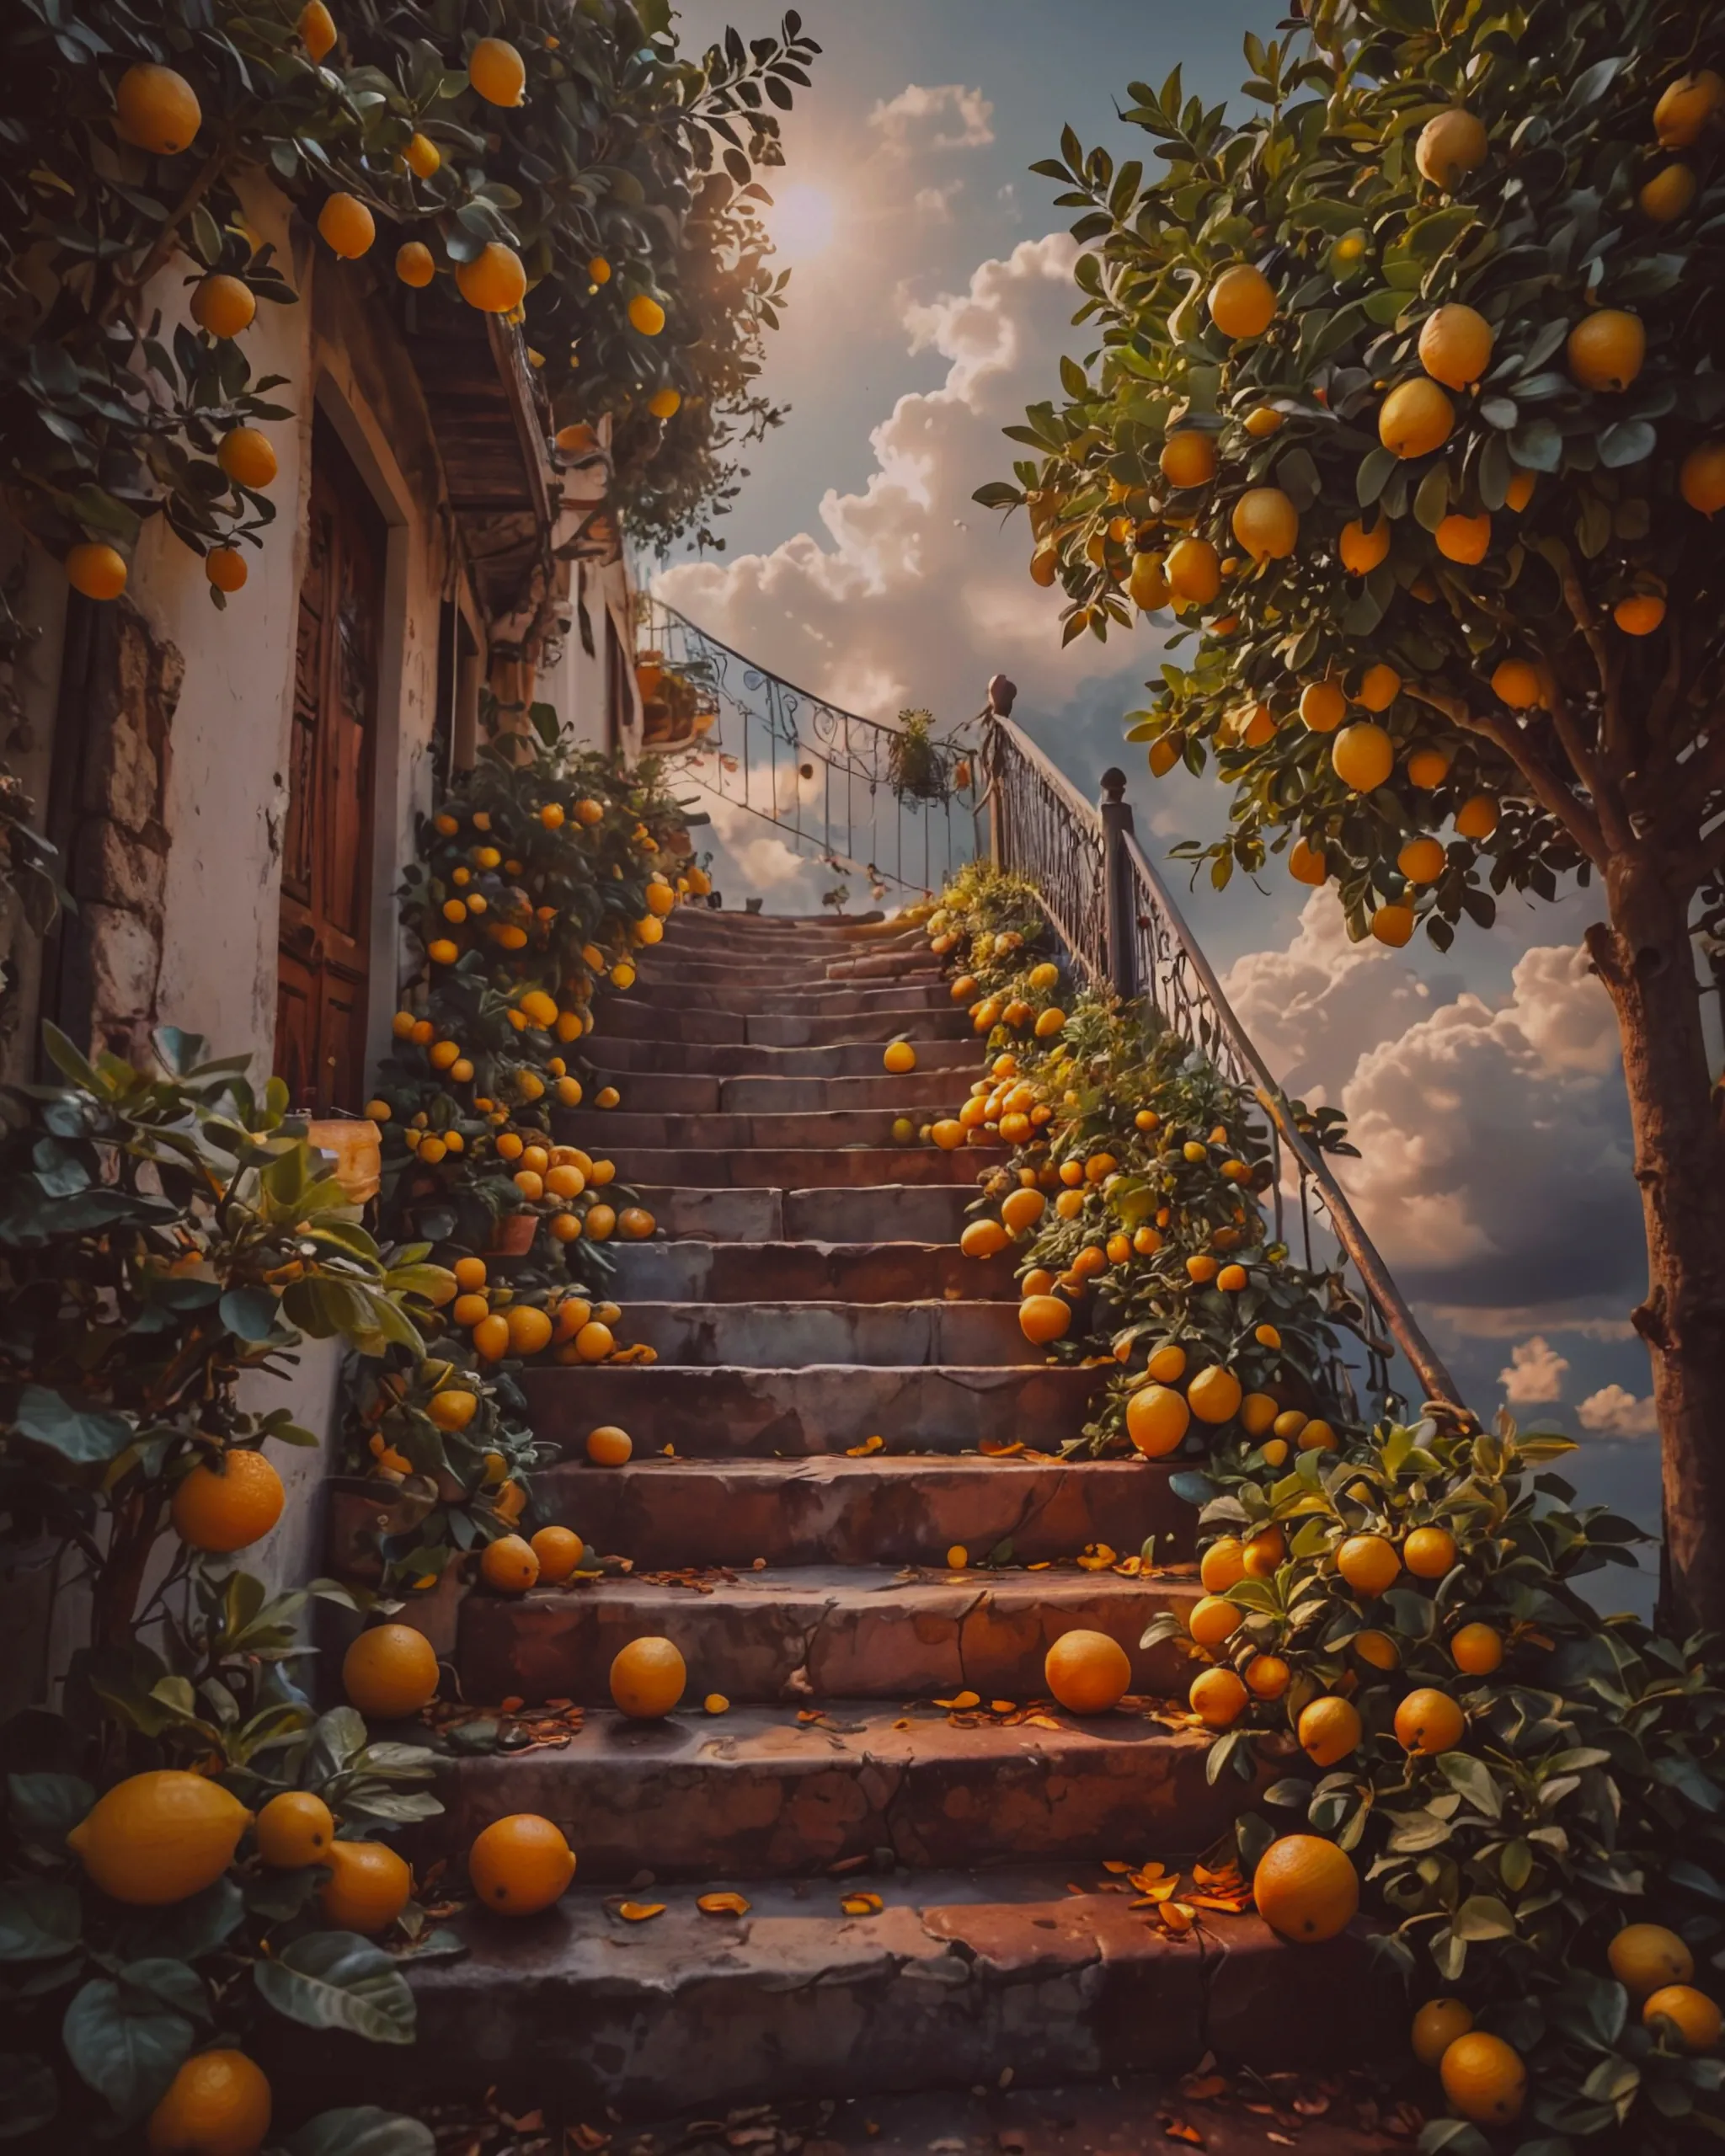 Stairway to lemon